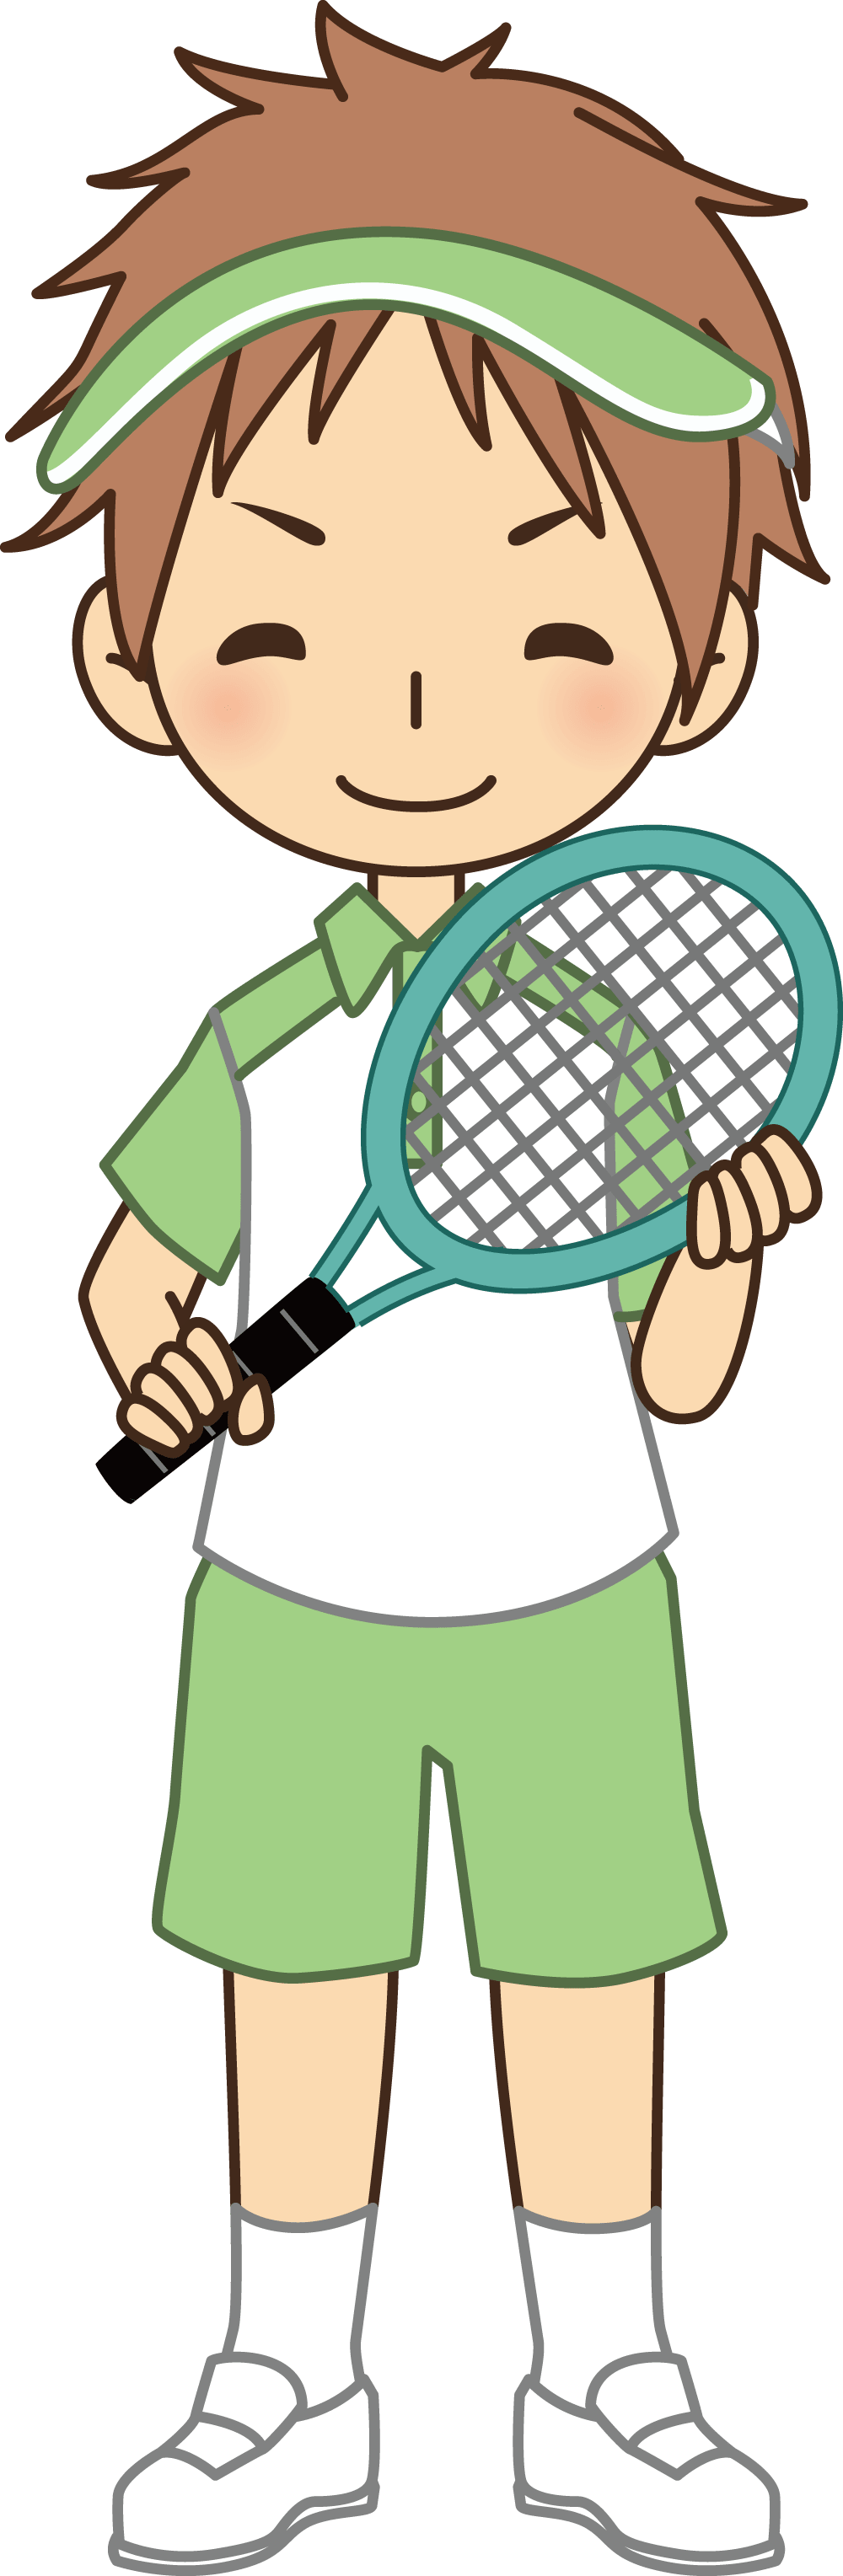 男性网球选手为球拍